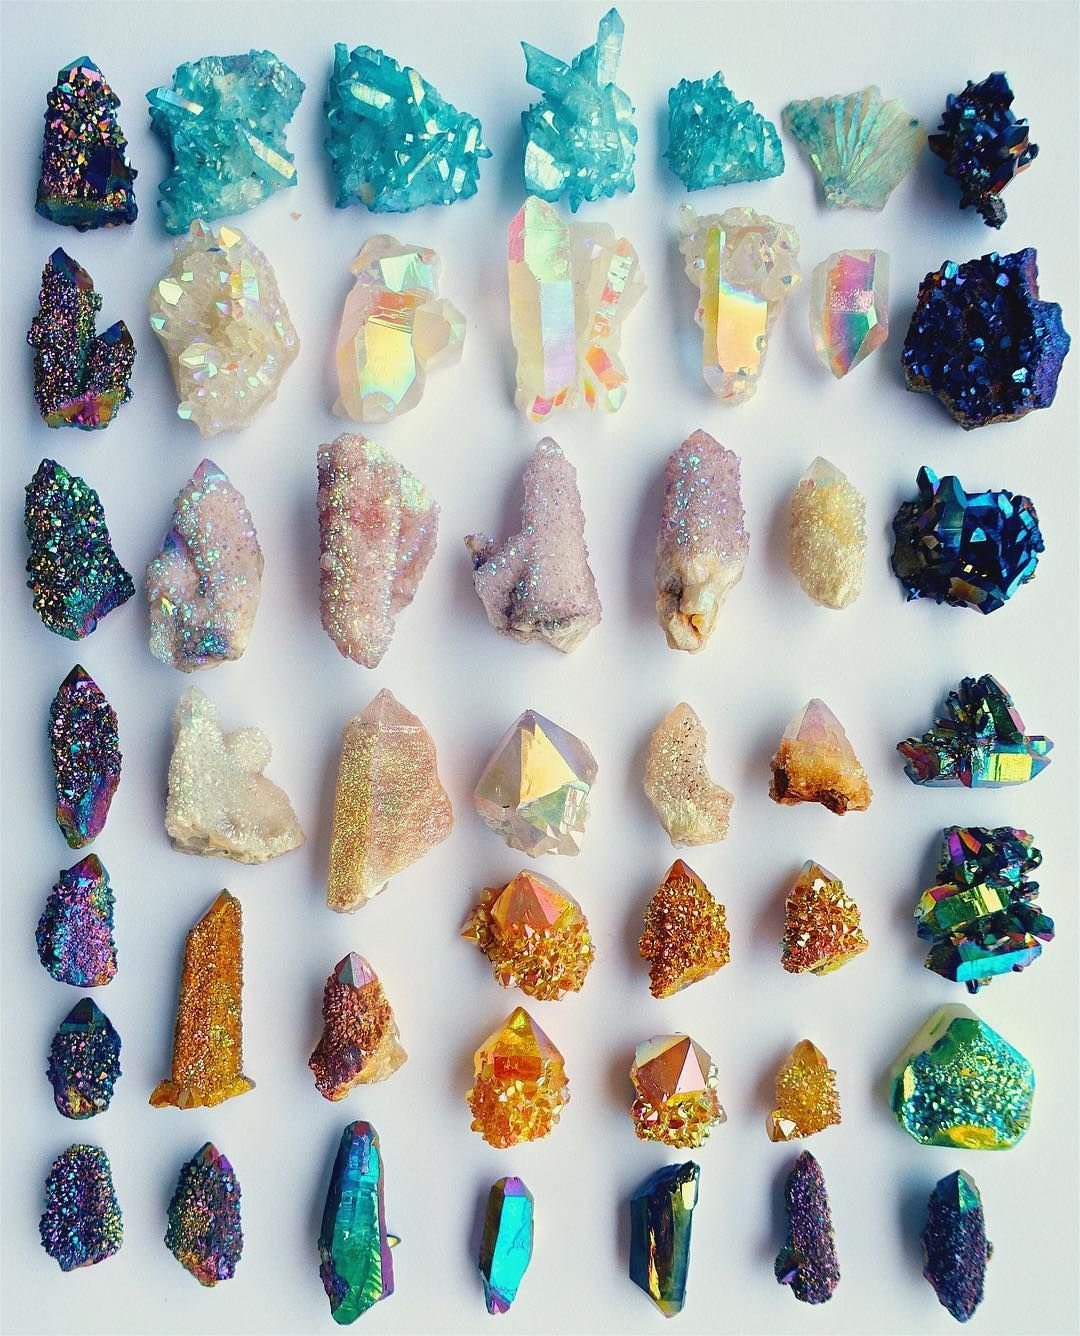 Самоцветы получение. Самоцветы минералы натуральные камни. Самоцветы минералы Кристалл. Коллекция "минералы и горные породы" (поделочные камни). Минералы и Самоцветы | Зимина 2001.